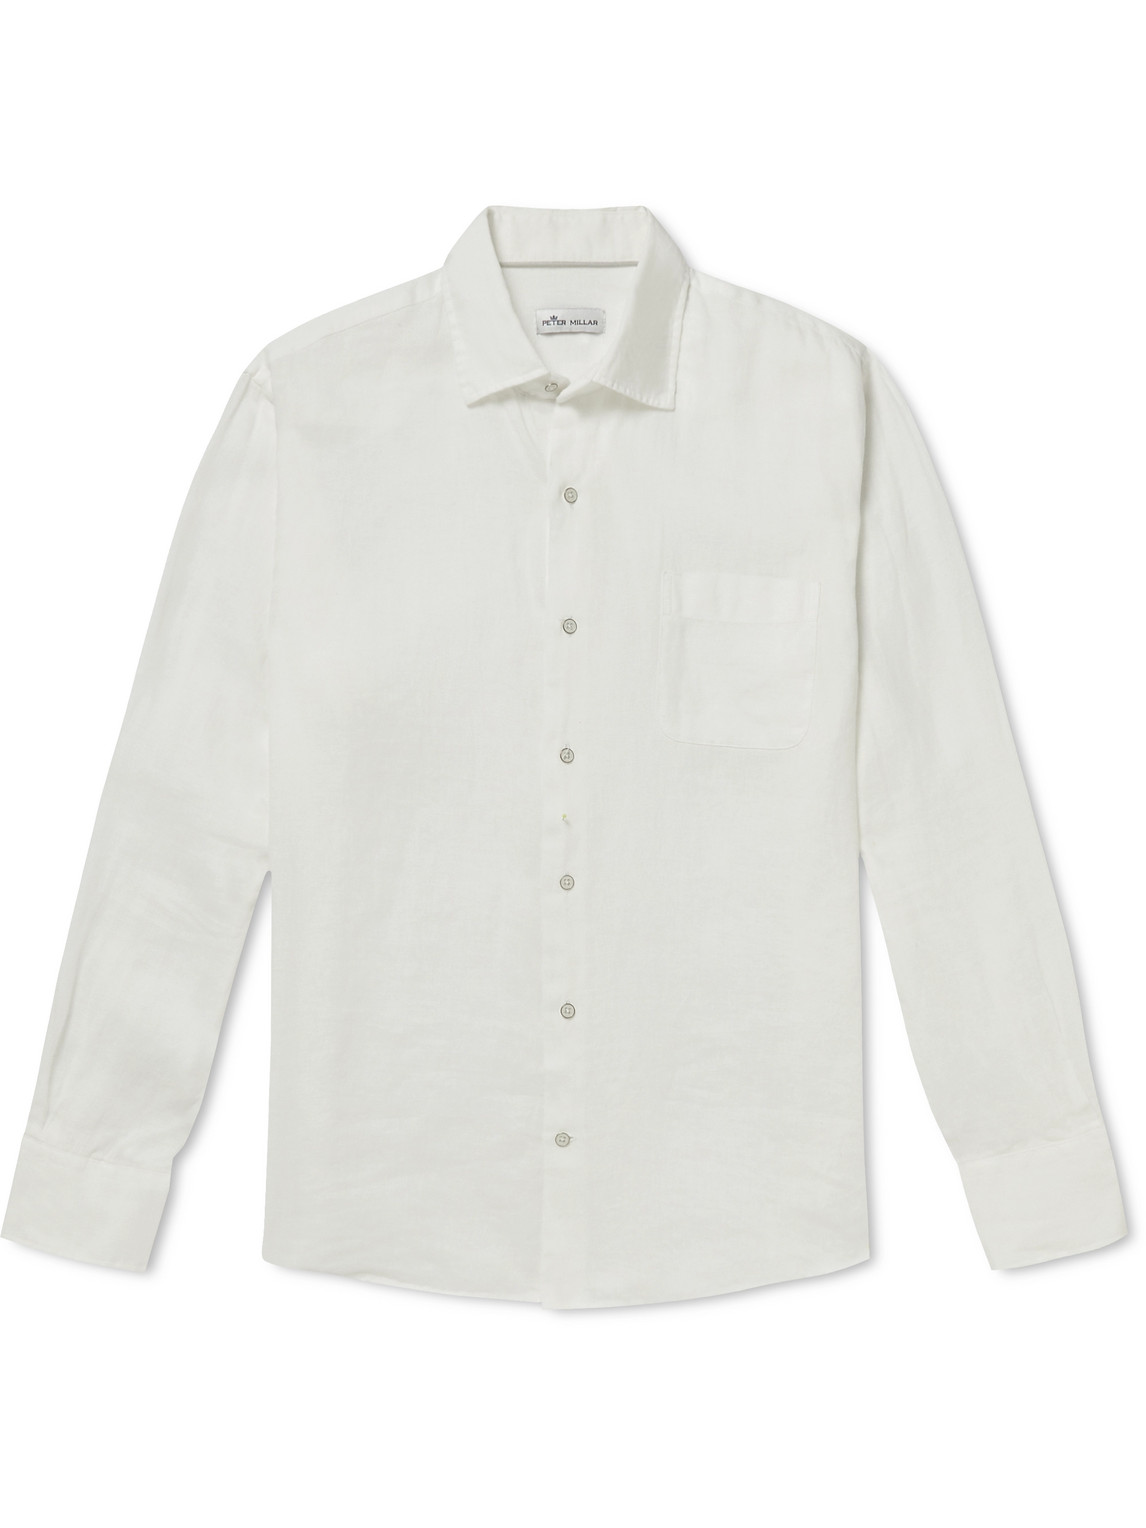 Peter Millar Coastal Linen Garment Dyed Classic Fit Button Down Shirt ...